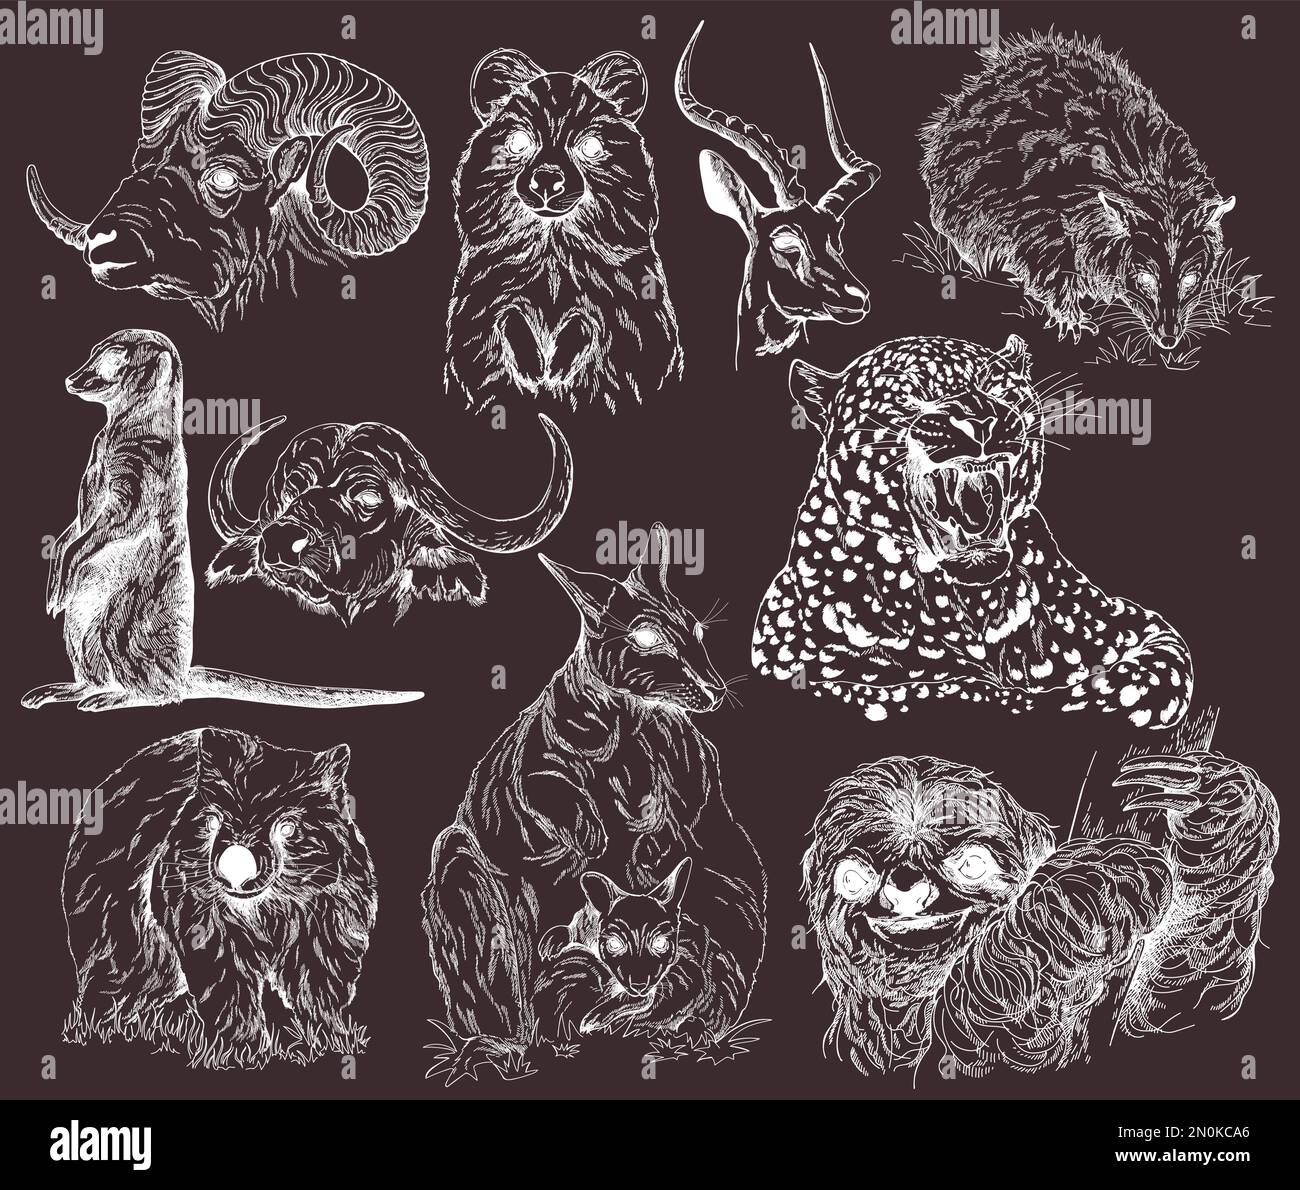 Ensemble d'animaux dessinés à la main isolés sur fond sombre. Illustration vectorielle. Illustration de Vecteur